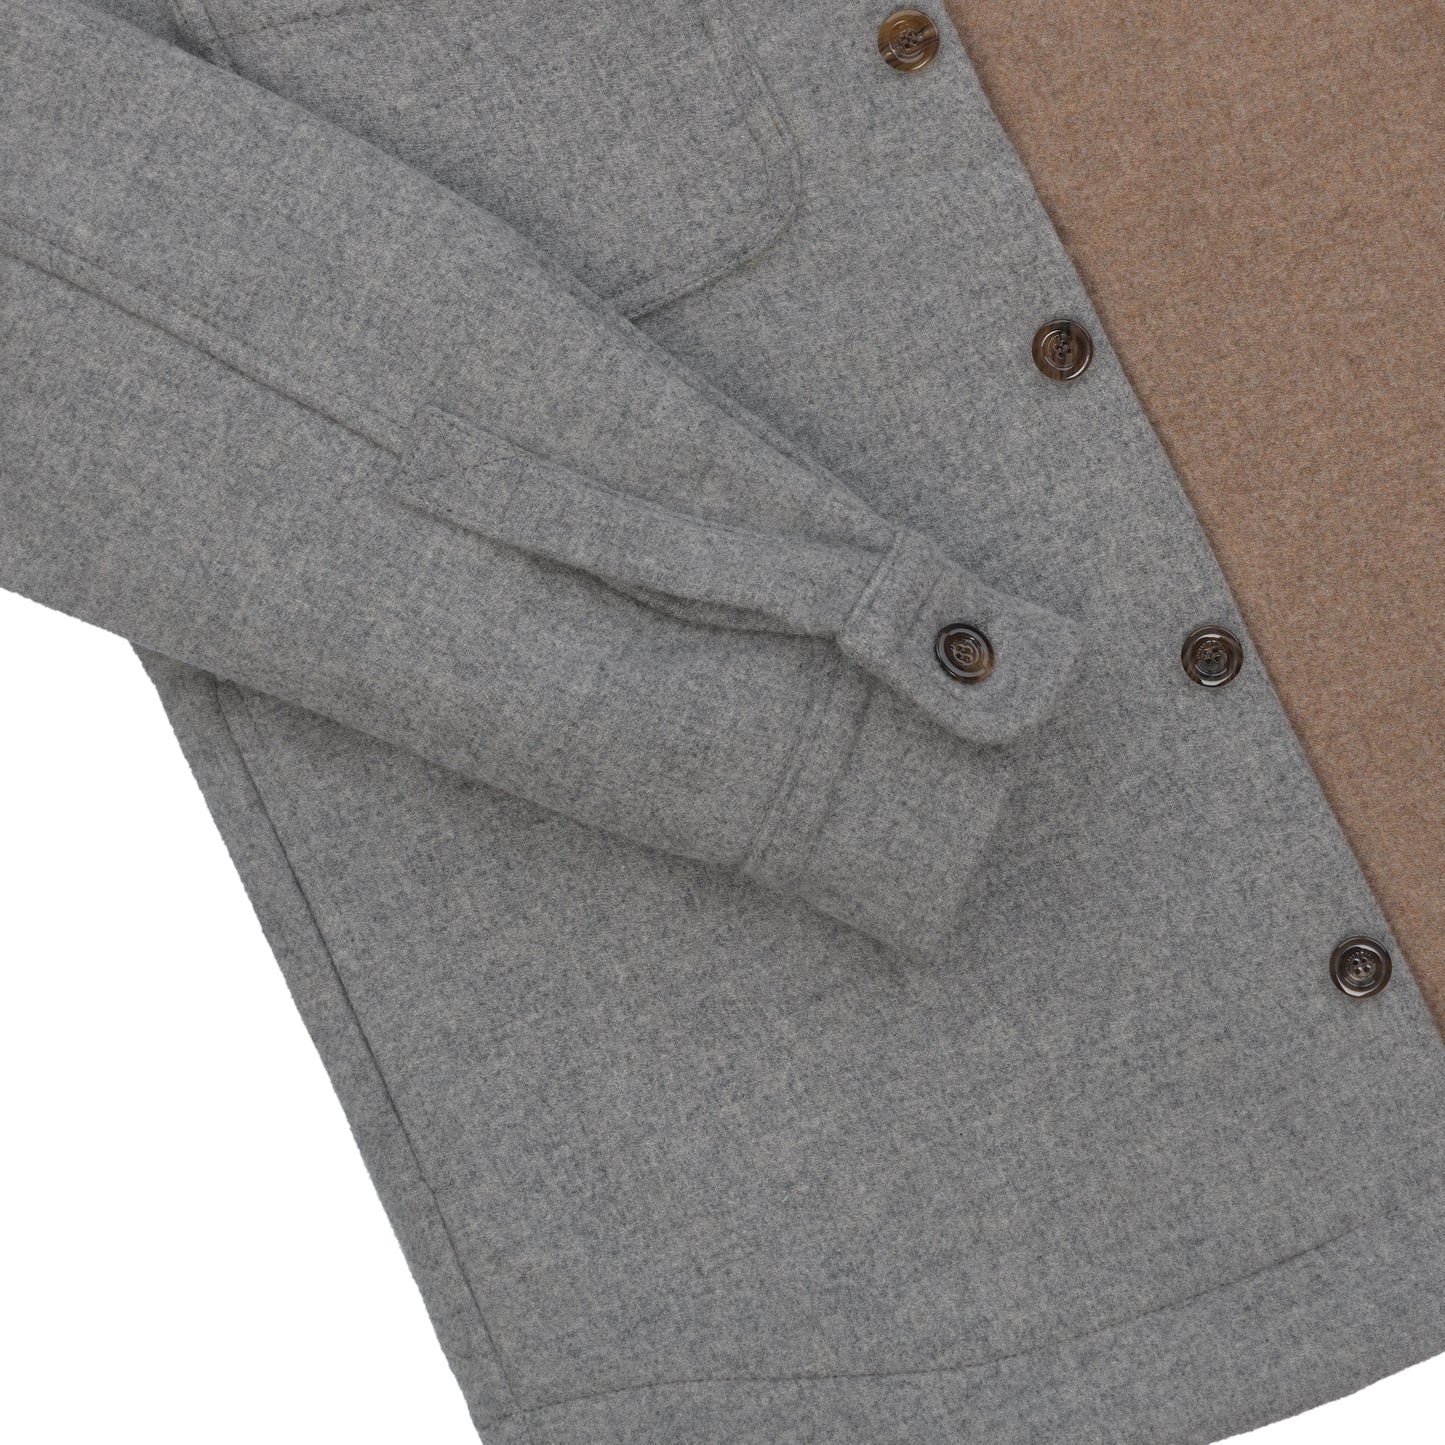 Wool Flannel Jacket in Light Grey